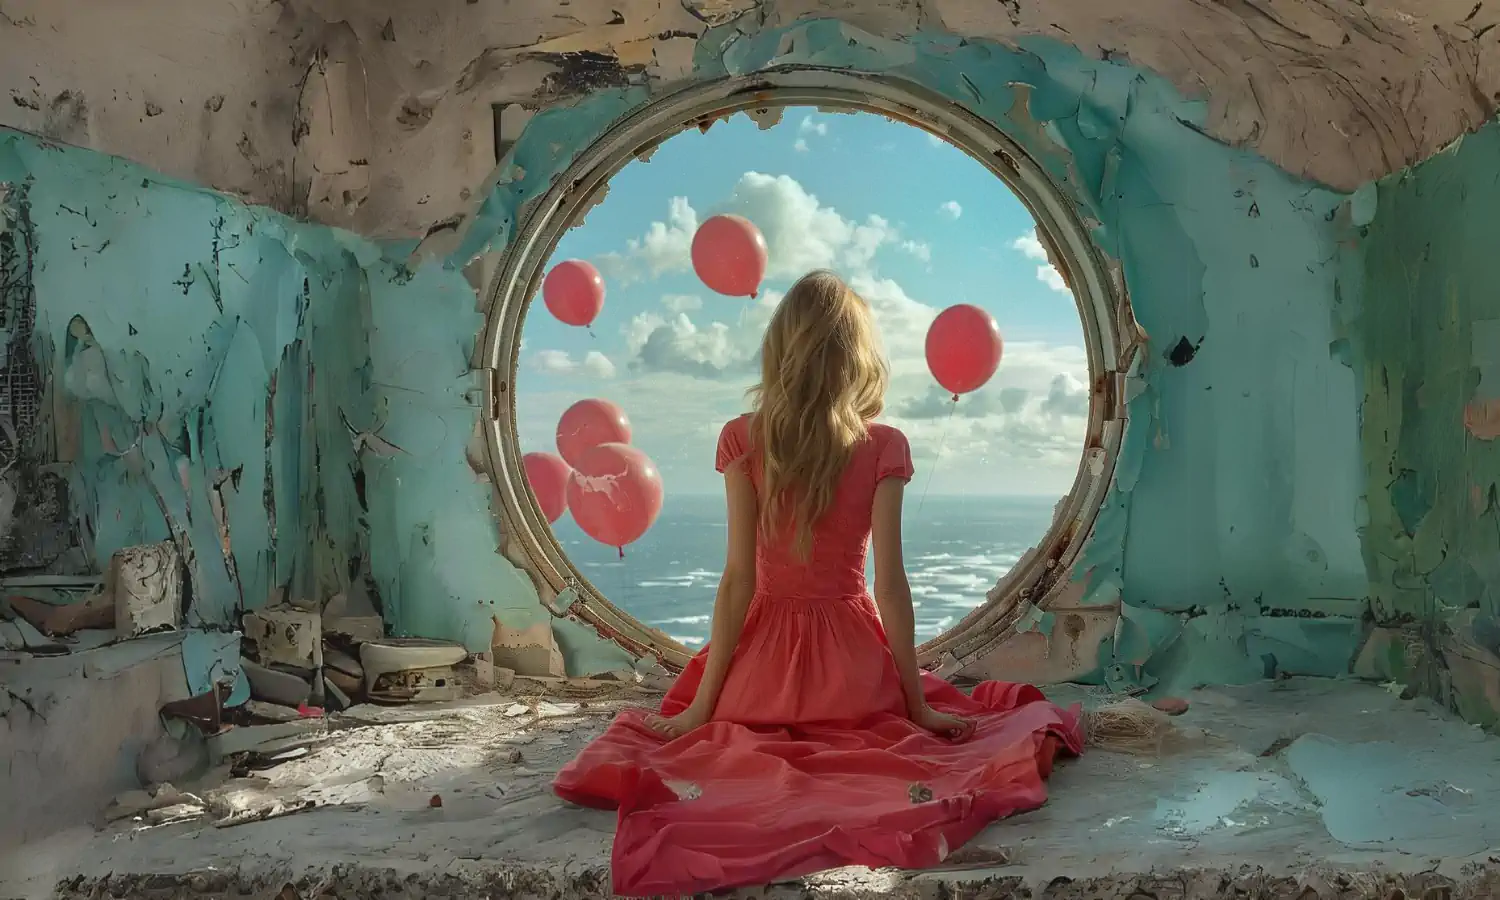 Kobieta w czerwonej sukni obserwuje balony przez okrągłe okno.